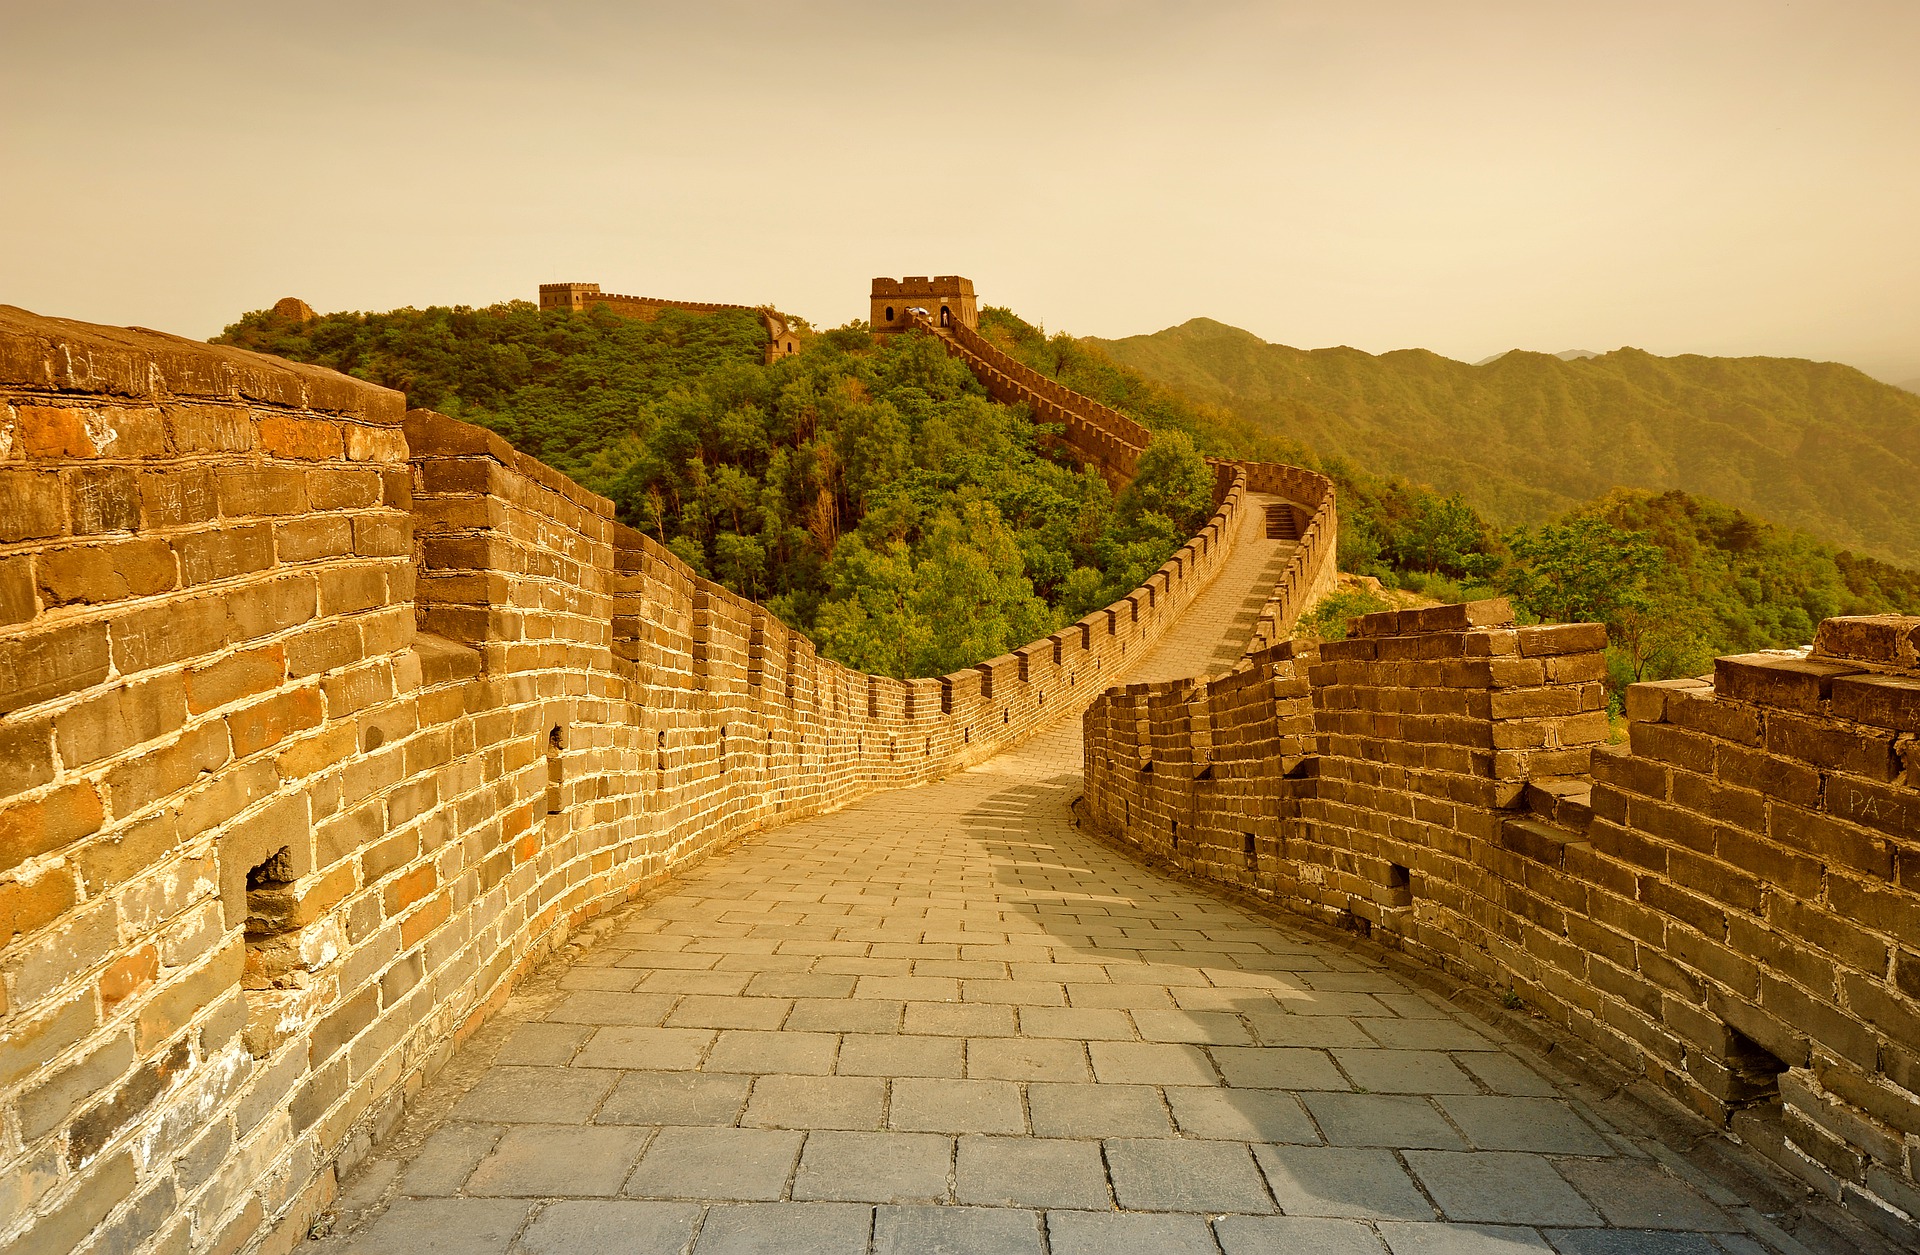 Cuanto se tardaron en construir la muralla china